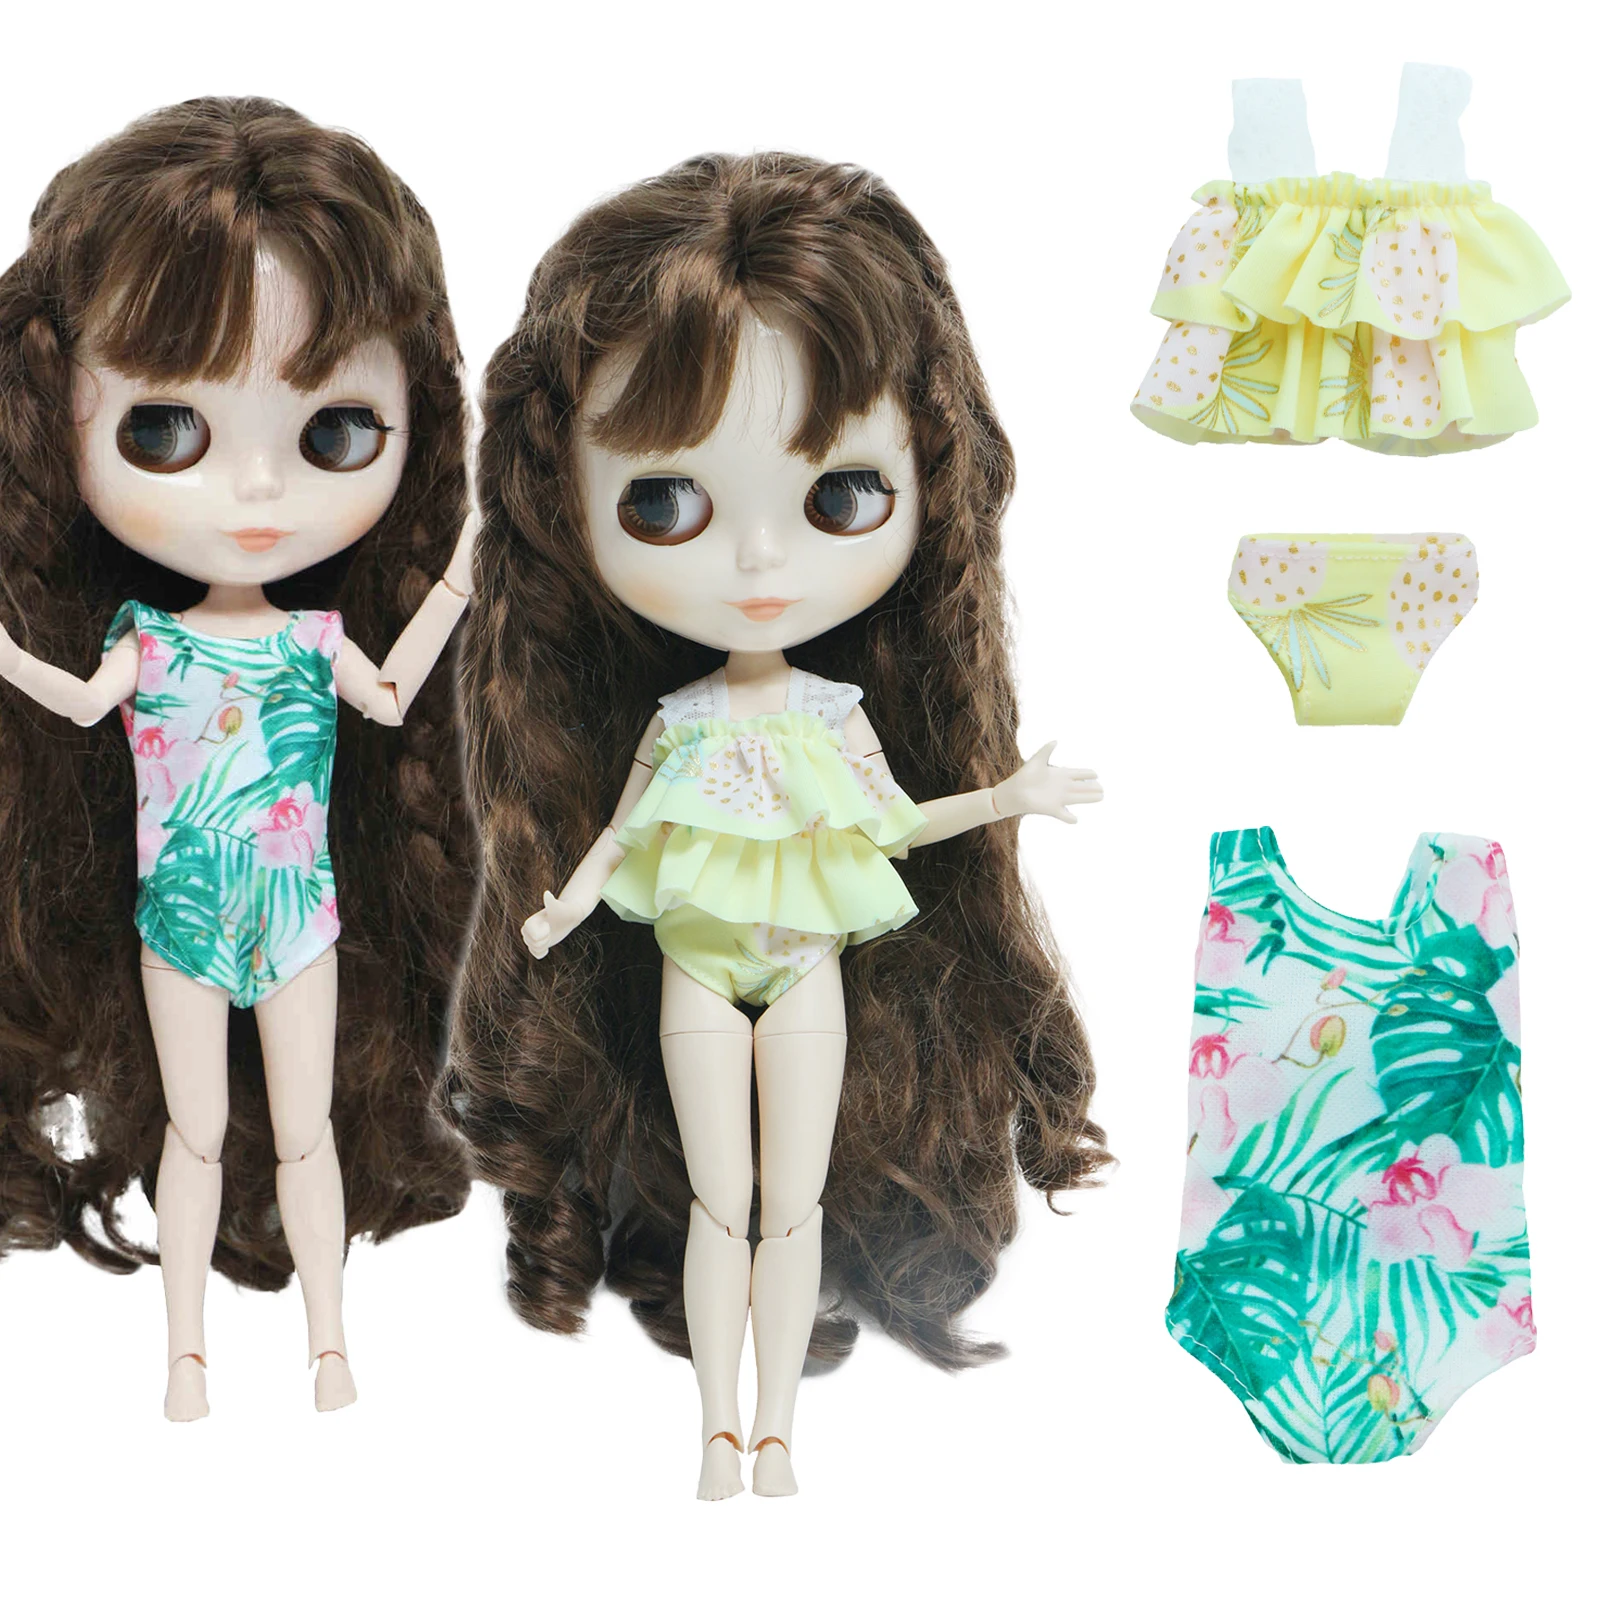 Модный Купальник для куклы BJD 2 шт./лот красочная летняя пляжная одежда